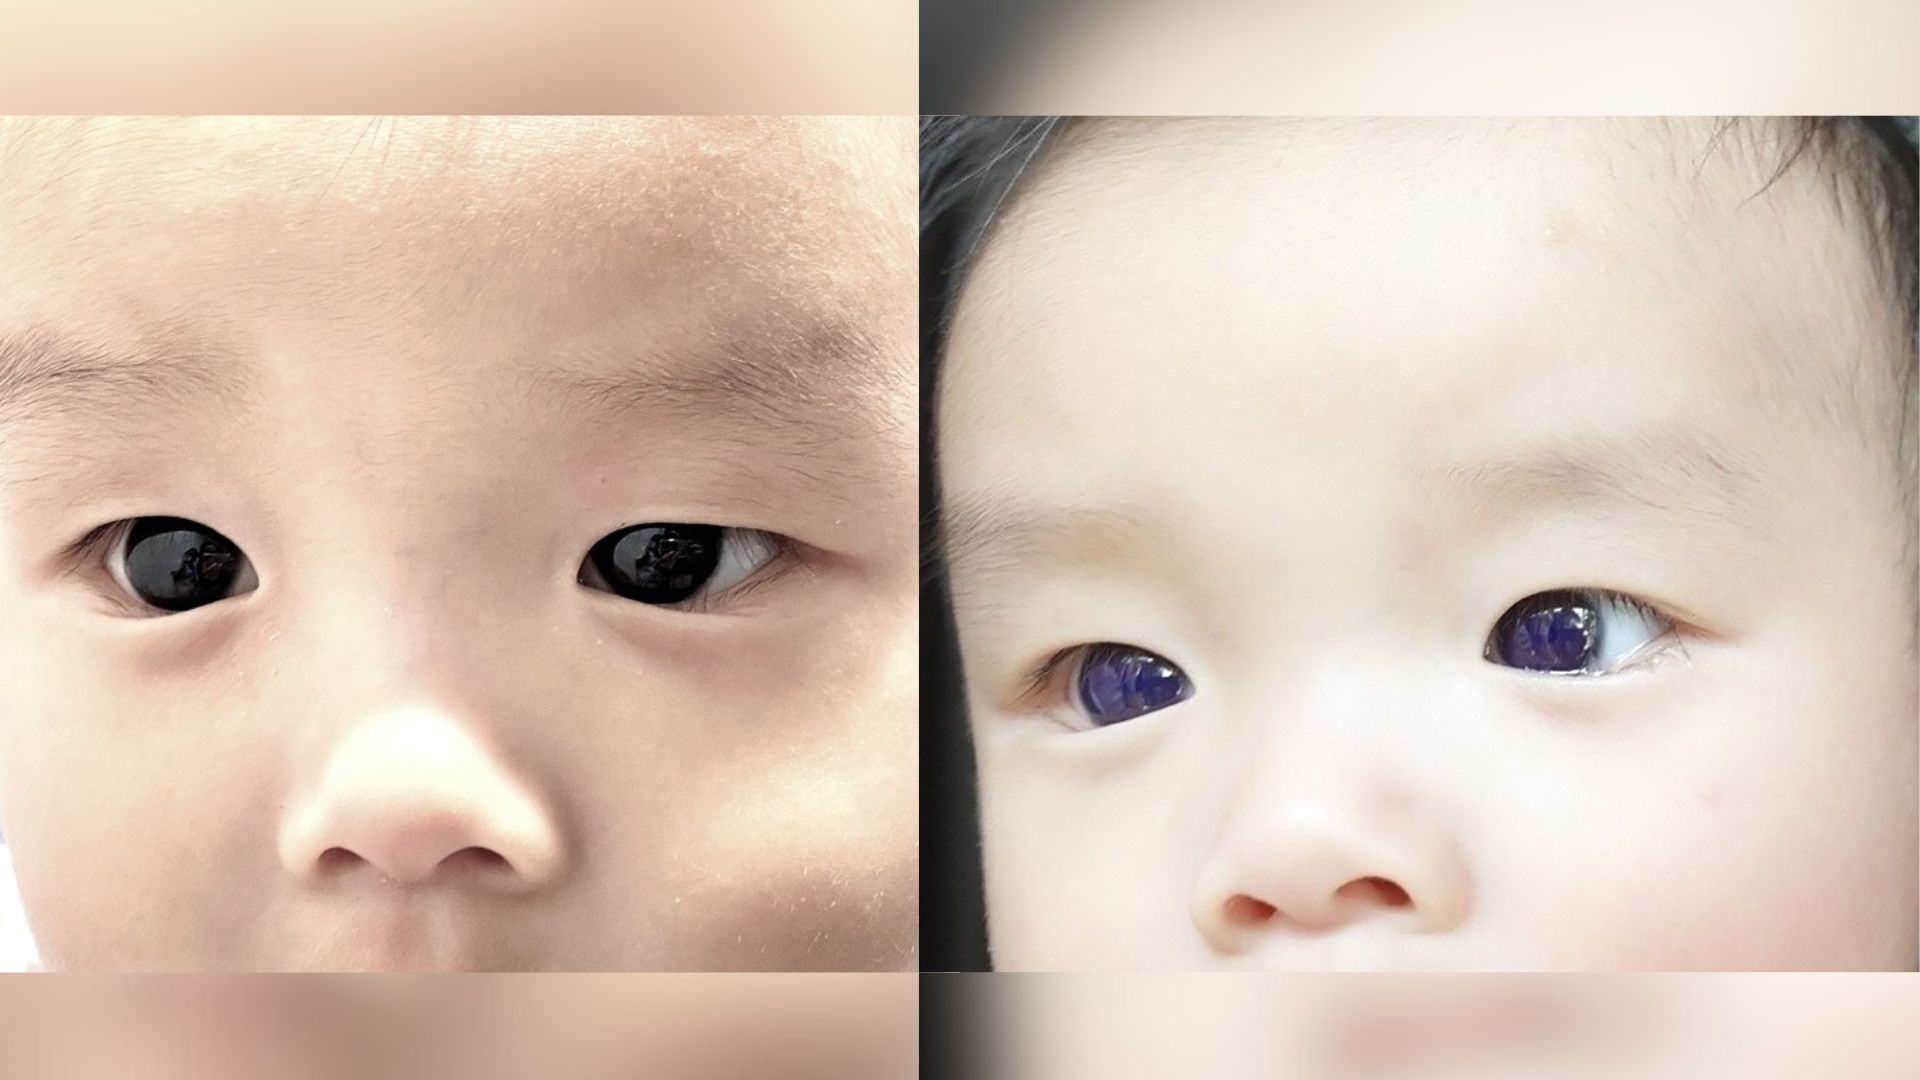 Los ojos marrón oscuro de un bebé de repente se vuelven azul índigo después del tratamiento antiviral COVID-19. ¿Pero por qué? -Revista Interesante